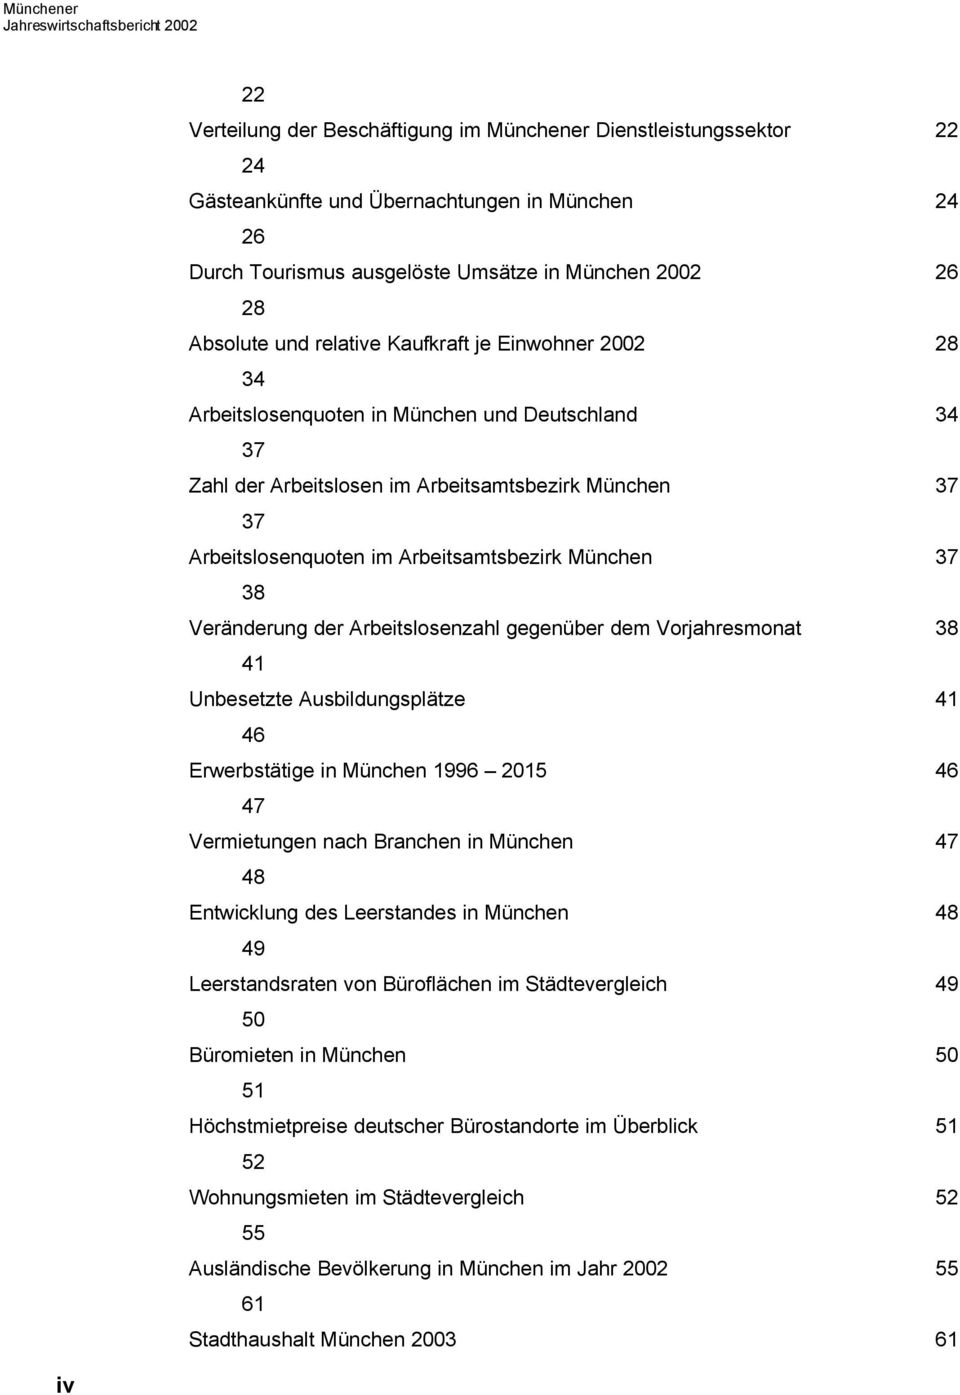 Arbeitslosenquoten im Arbeitsamtsbezirk München 37 38 Veränderung der Arbeitslosenzahl gegenüber dem Vorjahresmonat 38 41 Unbesetzte Ausbildungsplätze 41 46 Erwerbstätige in München 1996 2015 46 47